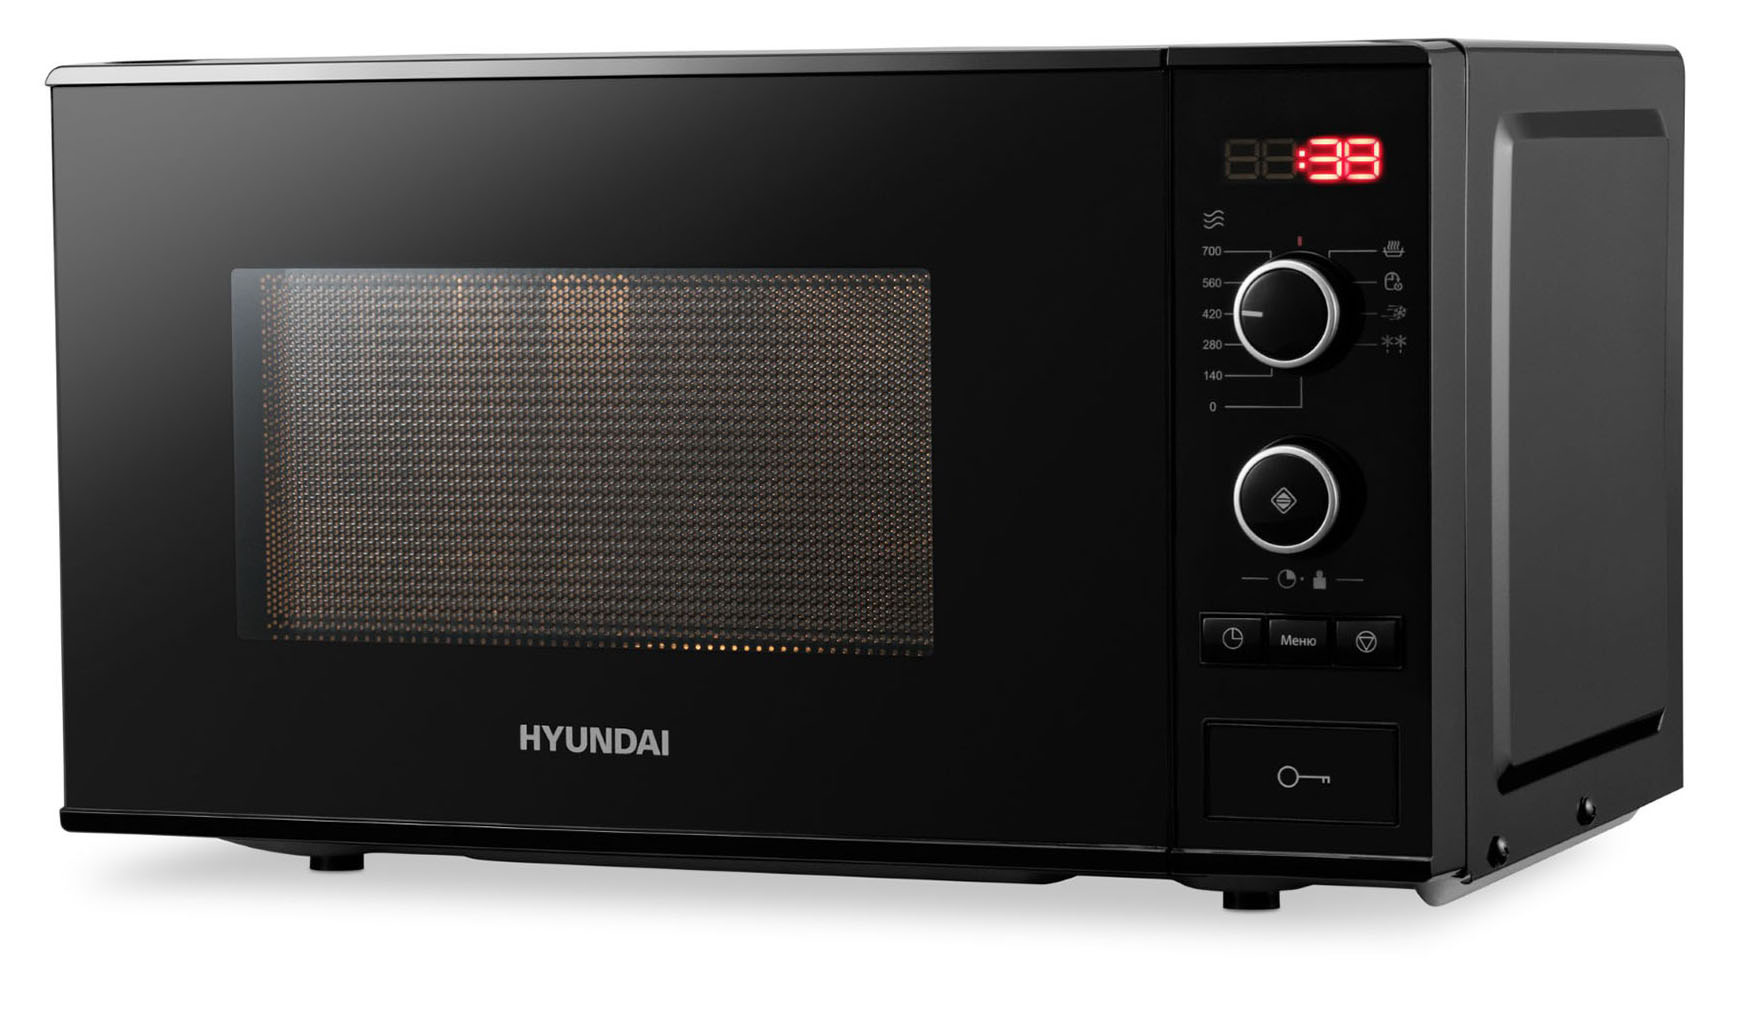 Микроволновая печь соло HYUNDAI HYM-D3032 черный микроволновая печь соло hyundai hym m2001 s